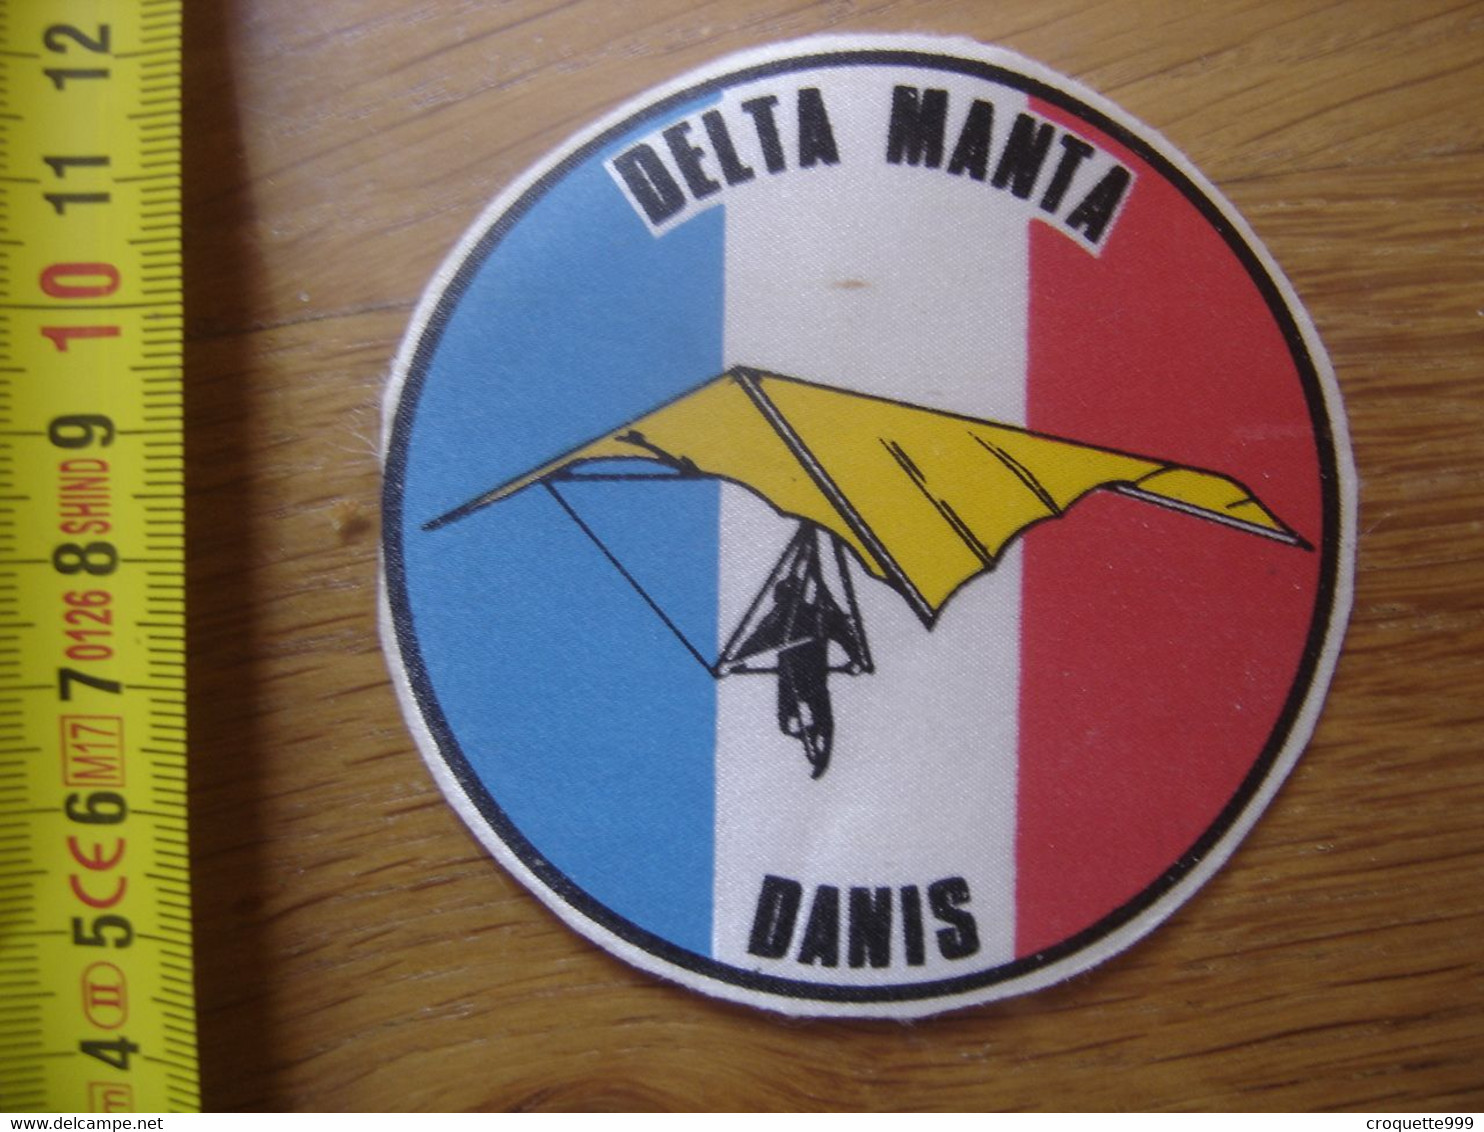 Ecusson Patch DELTA MANTA DANIS Bleu Blanc Rouge - Parachutting